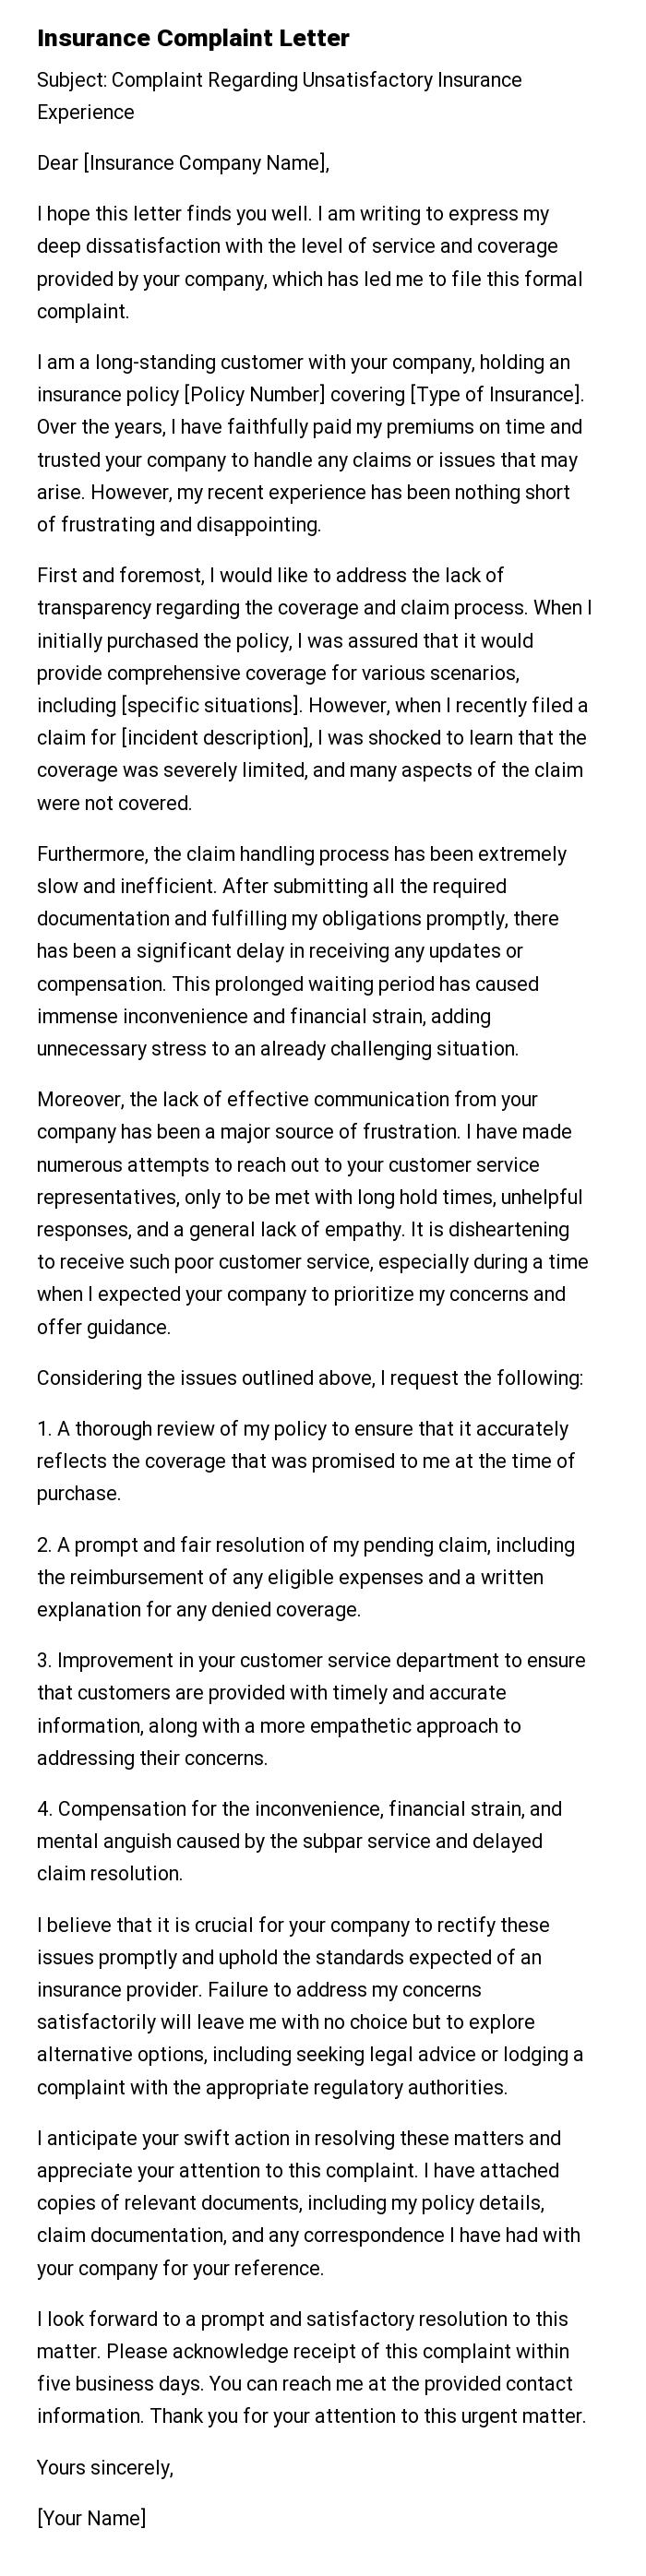 Insurance Complaint Letter